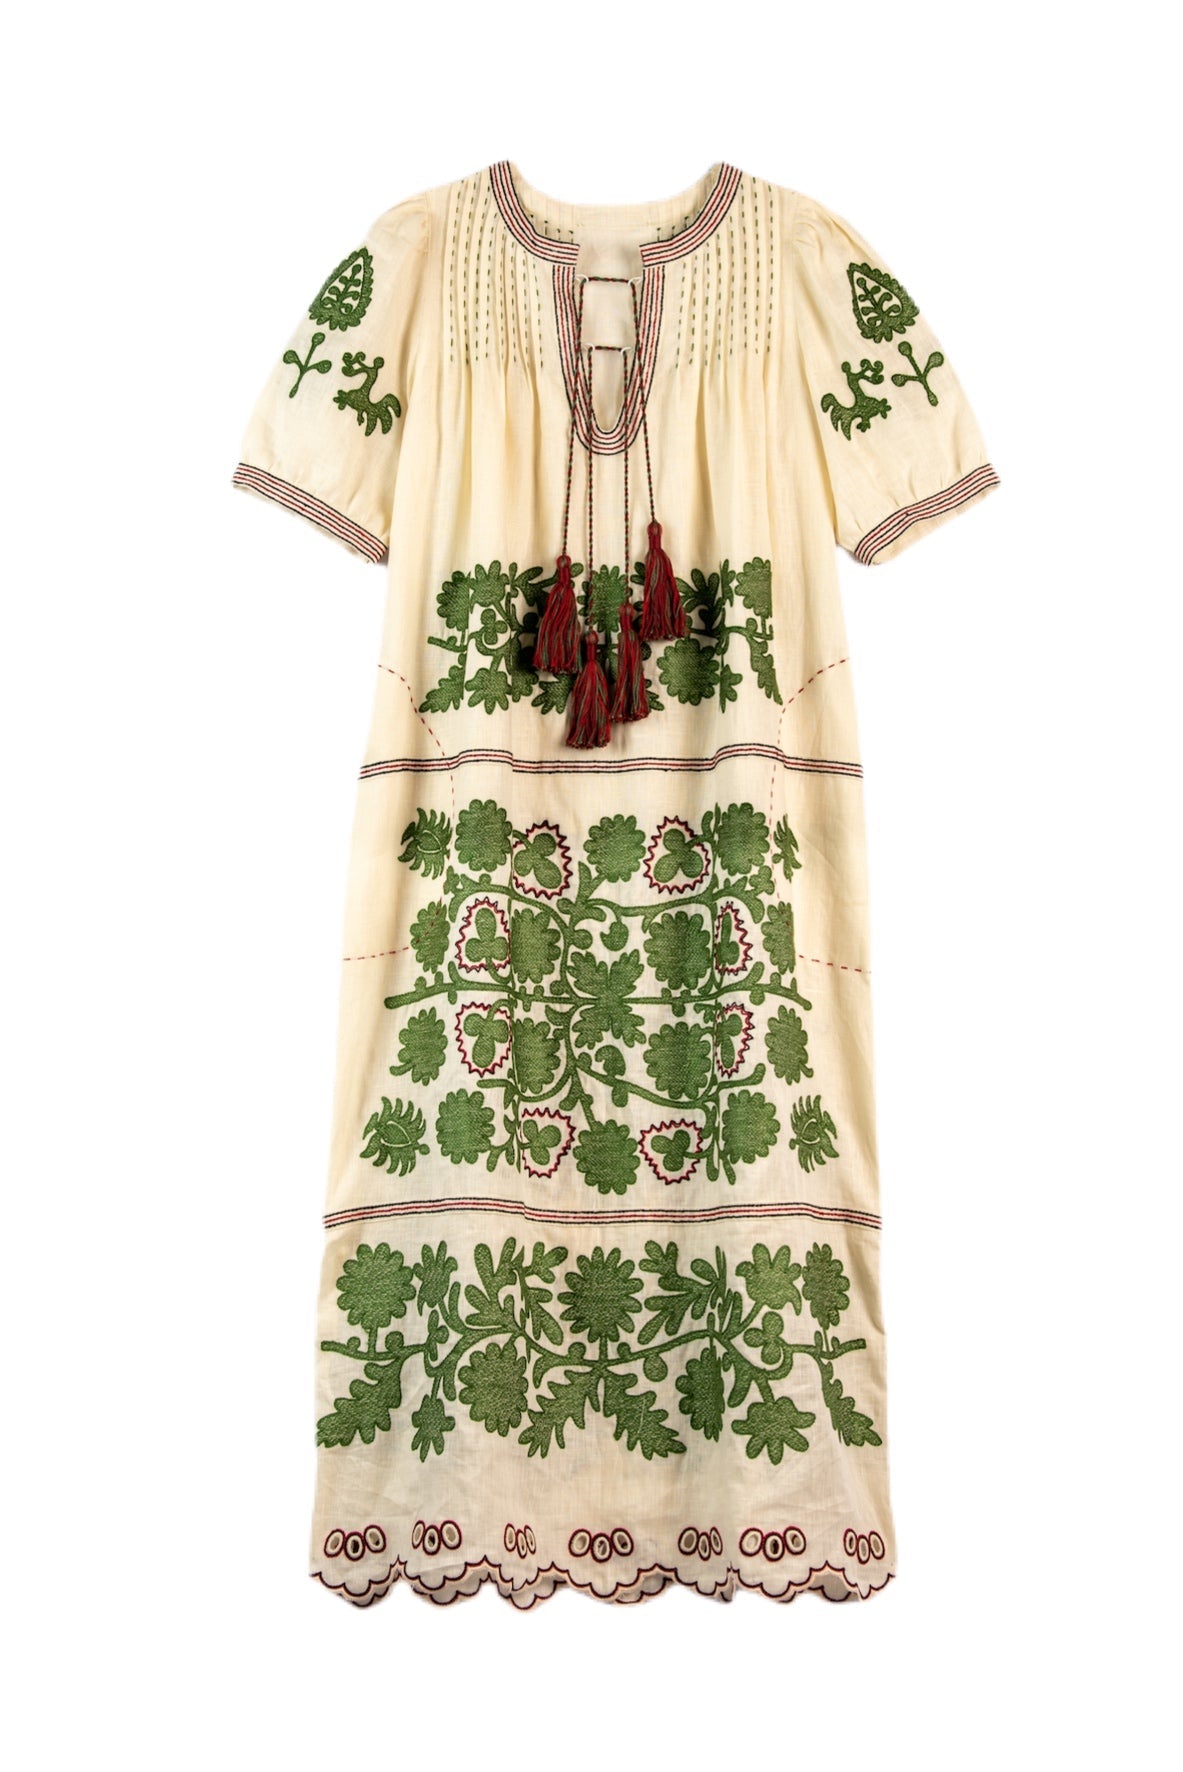 Natalia Ukrainian Embroidered Maxi Dress - Ivory, Olive by Larkin Lane